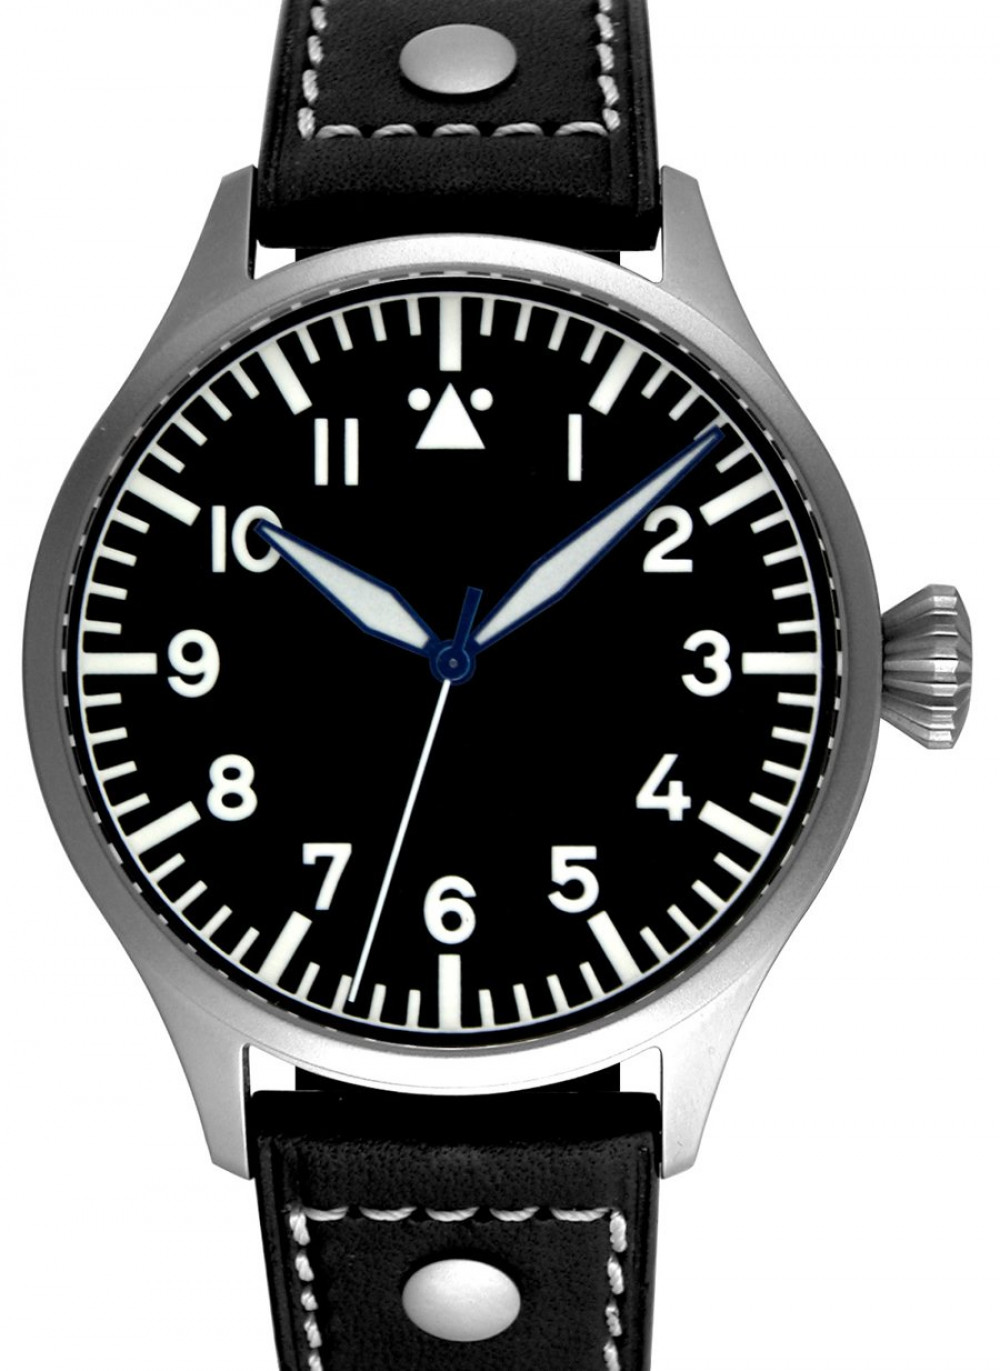 Zegarek firmy Archimede, model Pilot H